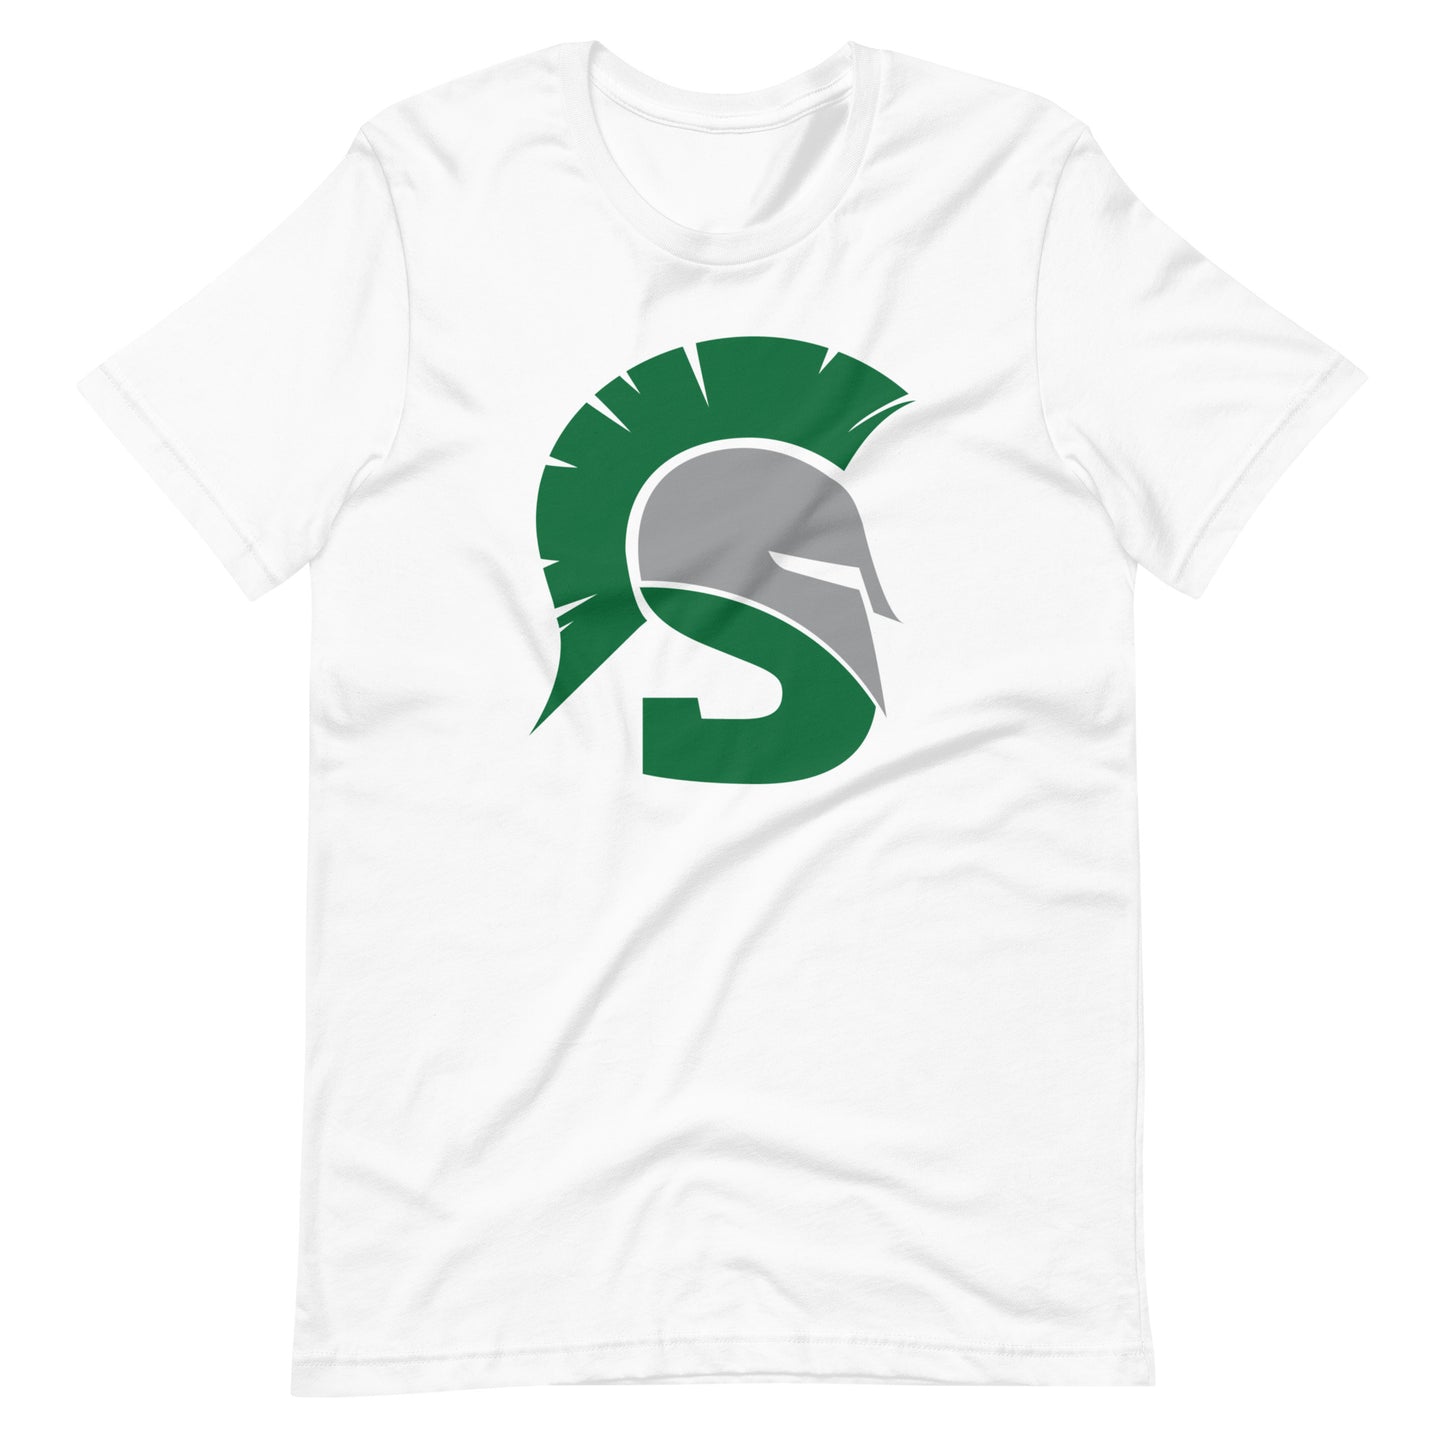 Big Spartan Adult T-Shirt